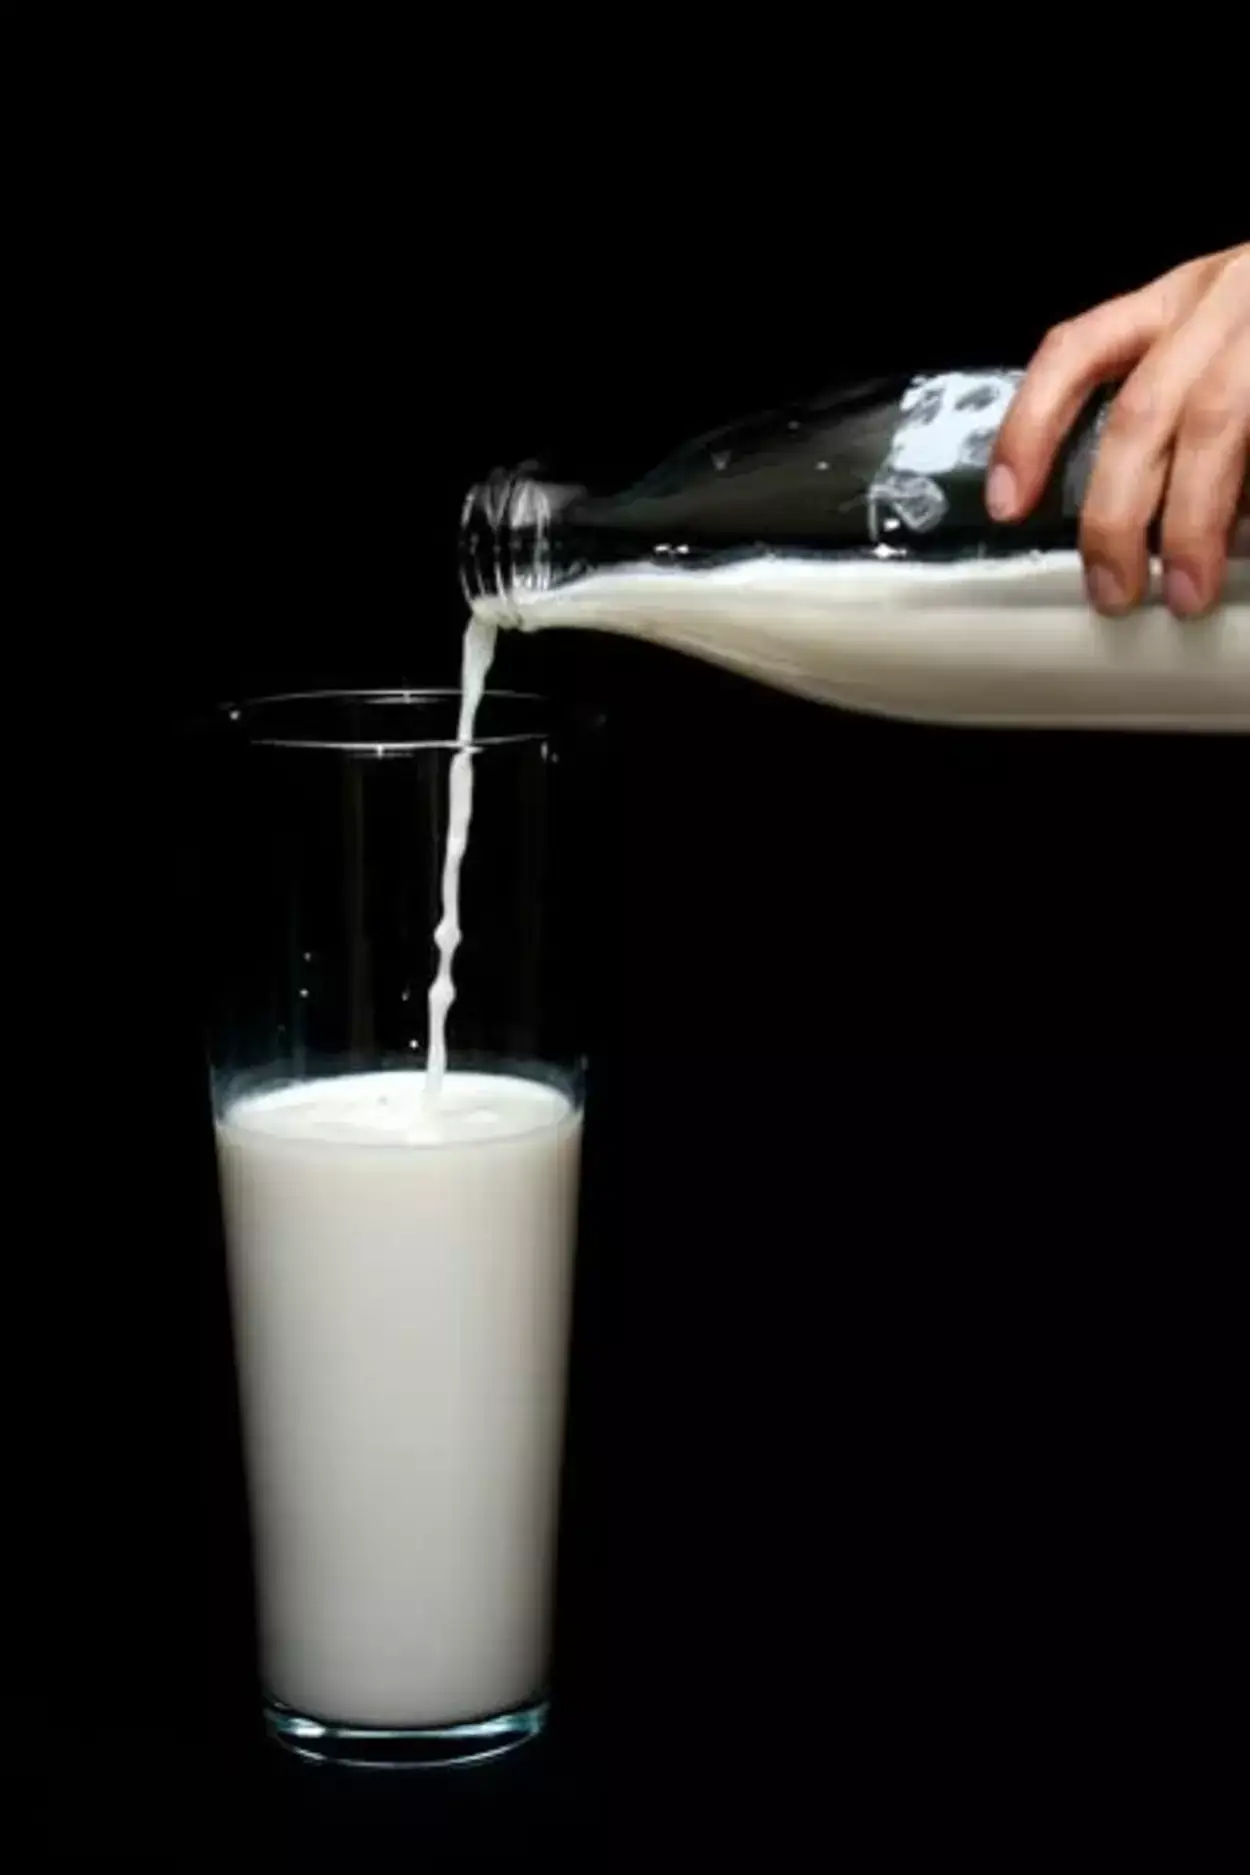  Wat is het verschil tussen Vitamine D-melk en volle melk? (Uitgelegd) - Alle Verschillen